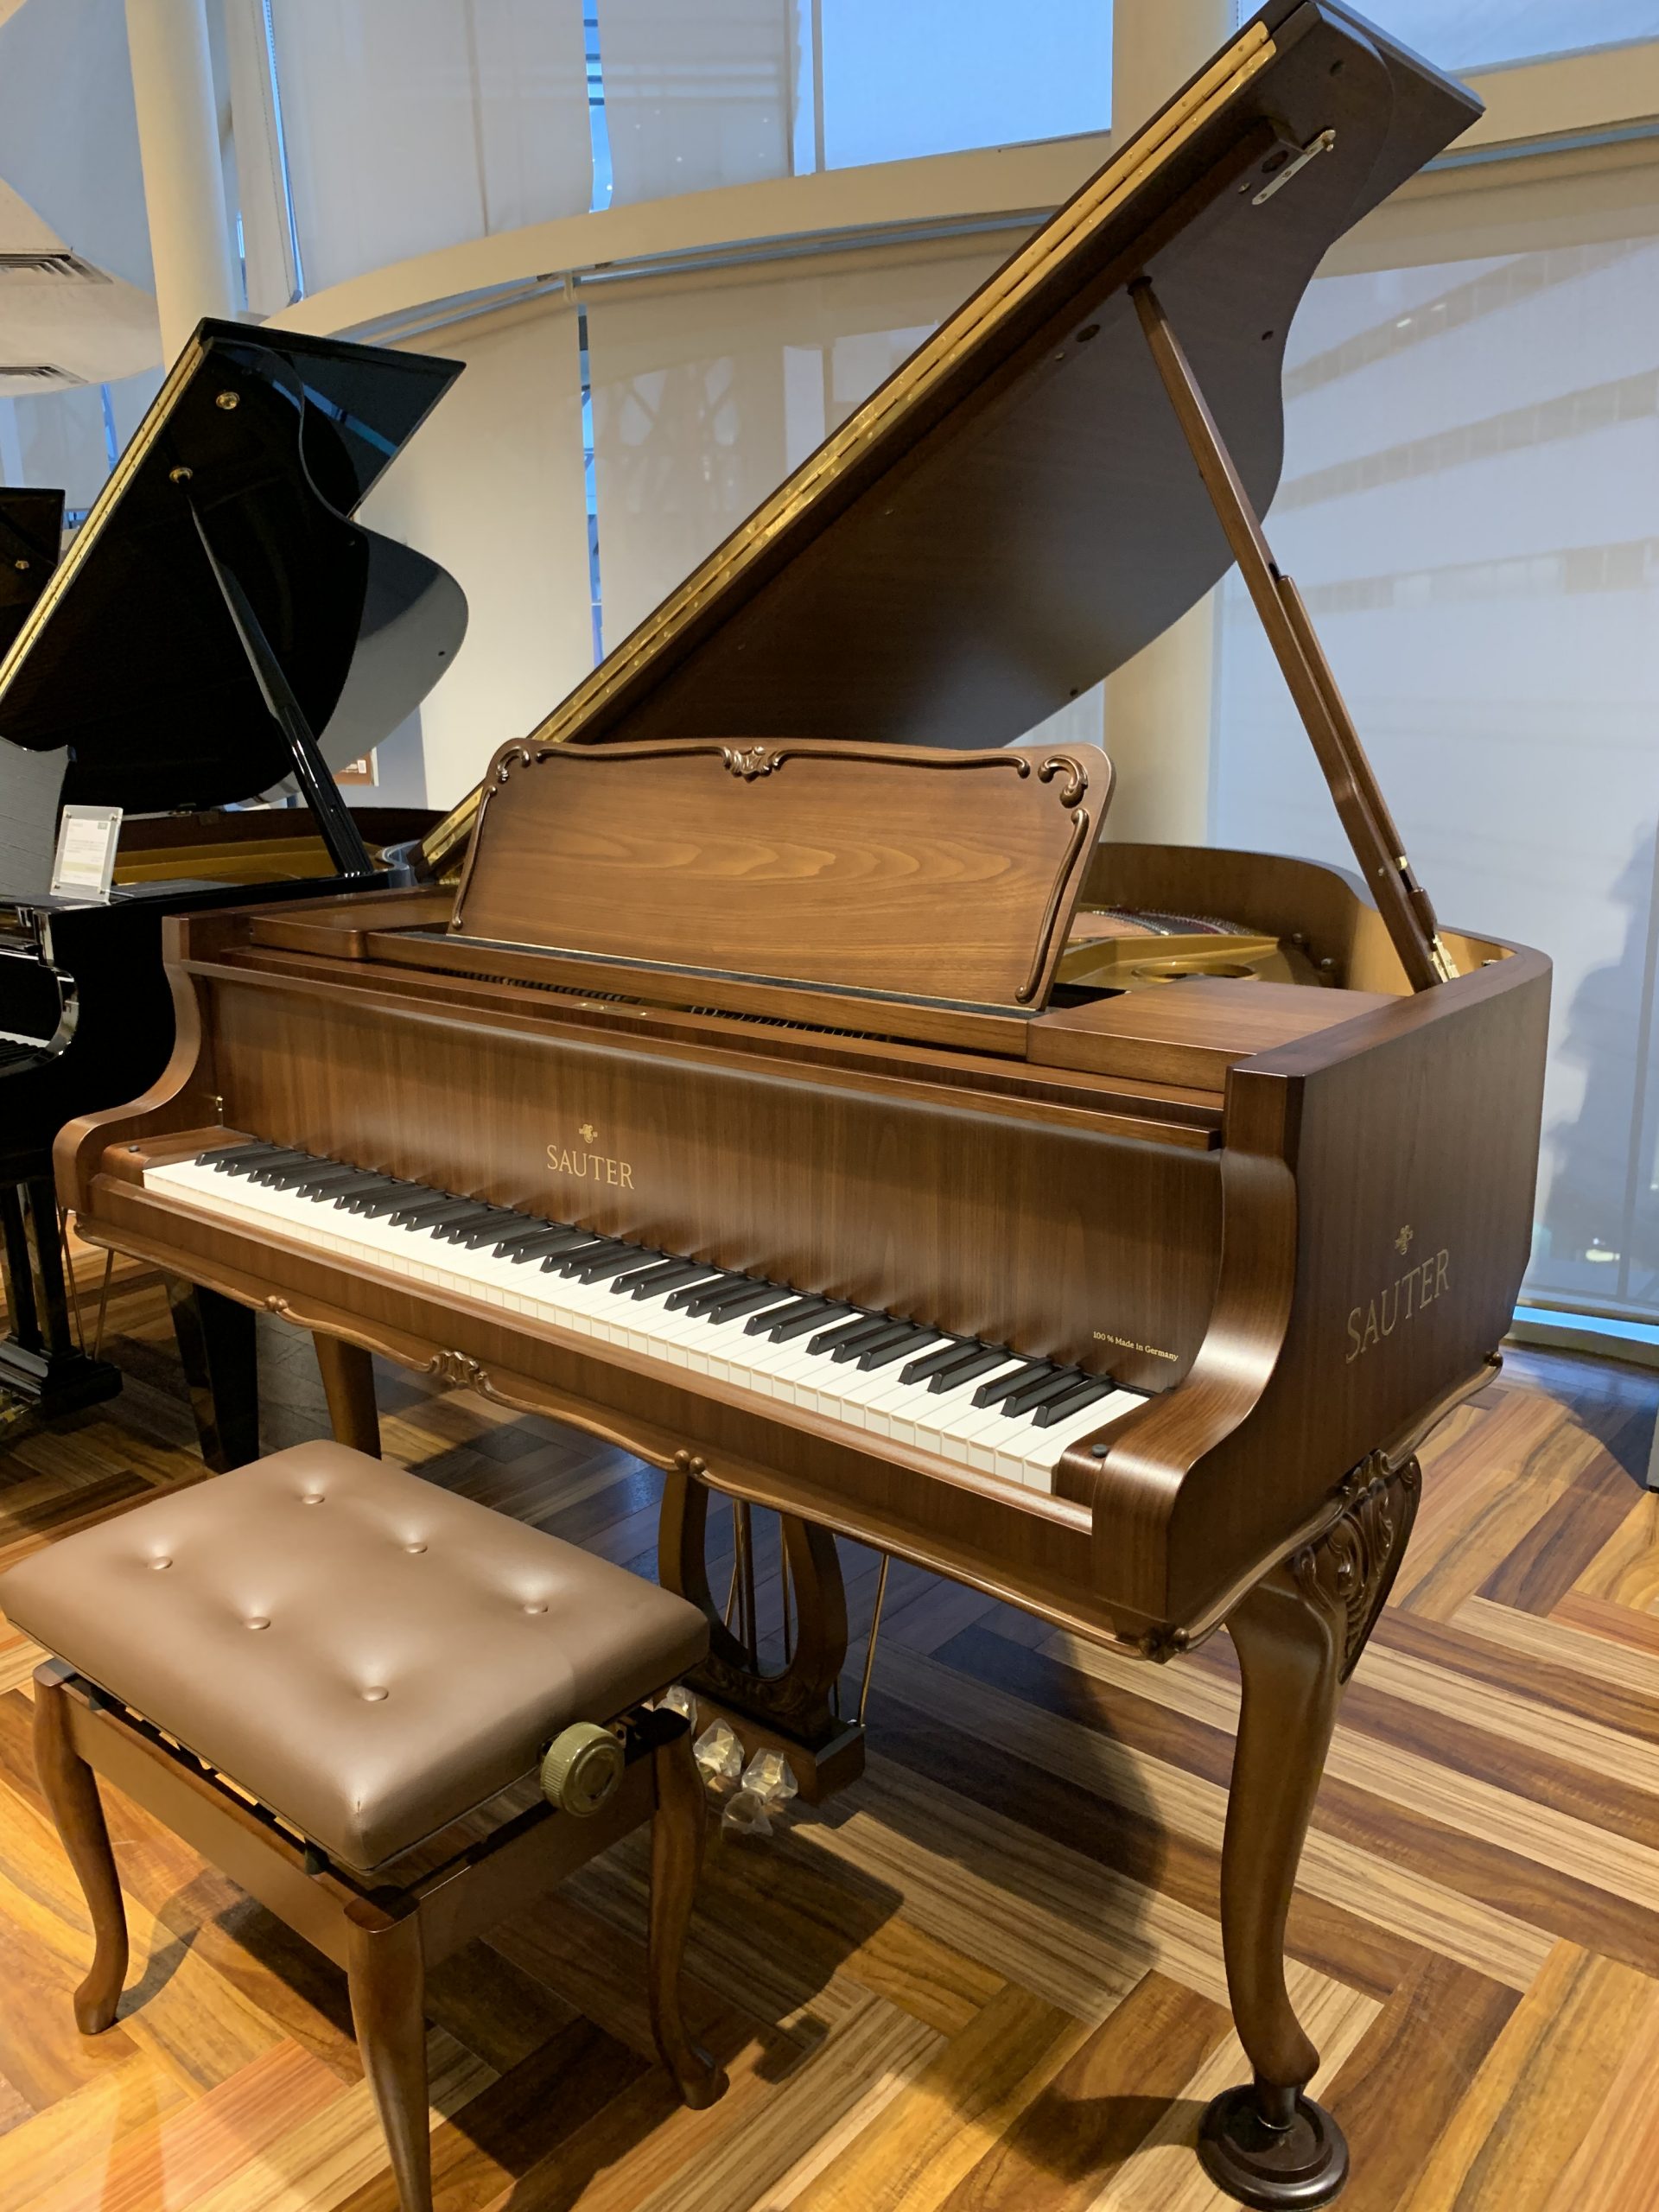 *ザウターグランドピアノご紹介 ザウターが南ドイツの小さな町でピアノを製作を始めたのは1819年。すでに200年以上の時が経ちました。伝統あるザウター家6代に伝わる高度なピアノ製作技術とピアノに対する高いモラル。他メーカーには少なくなったハンドメイドを基調とした誠実なピアノから生まれる音楽性豊かなサ […]